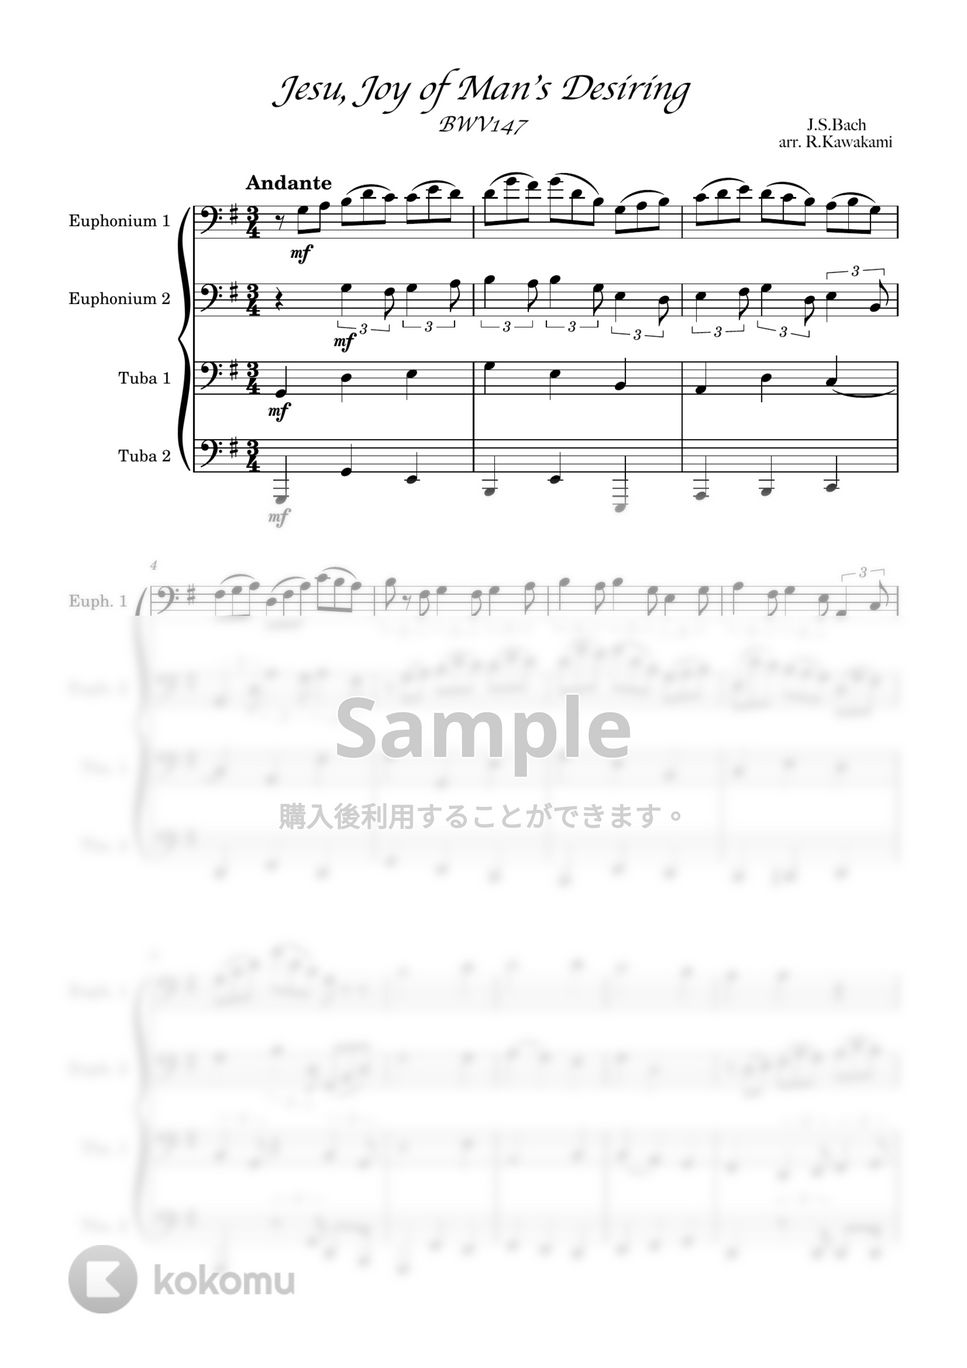 J.S.Bach - 主よ、人の望みの喜びよ (バリ・チューバ四重奏) by 川上龍